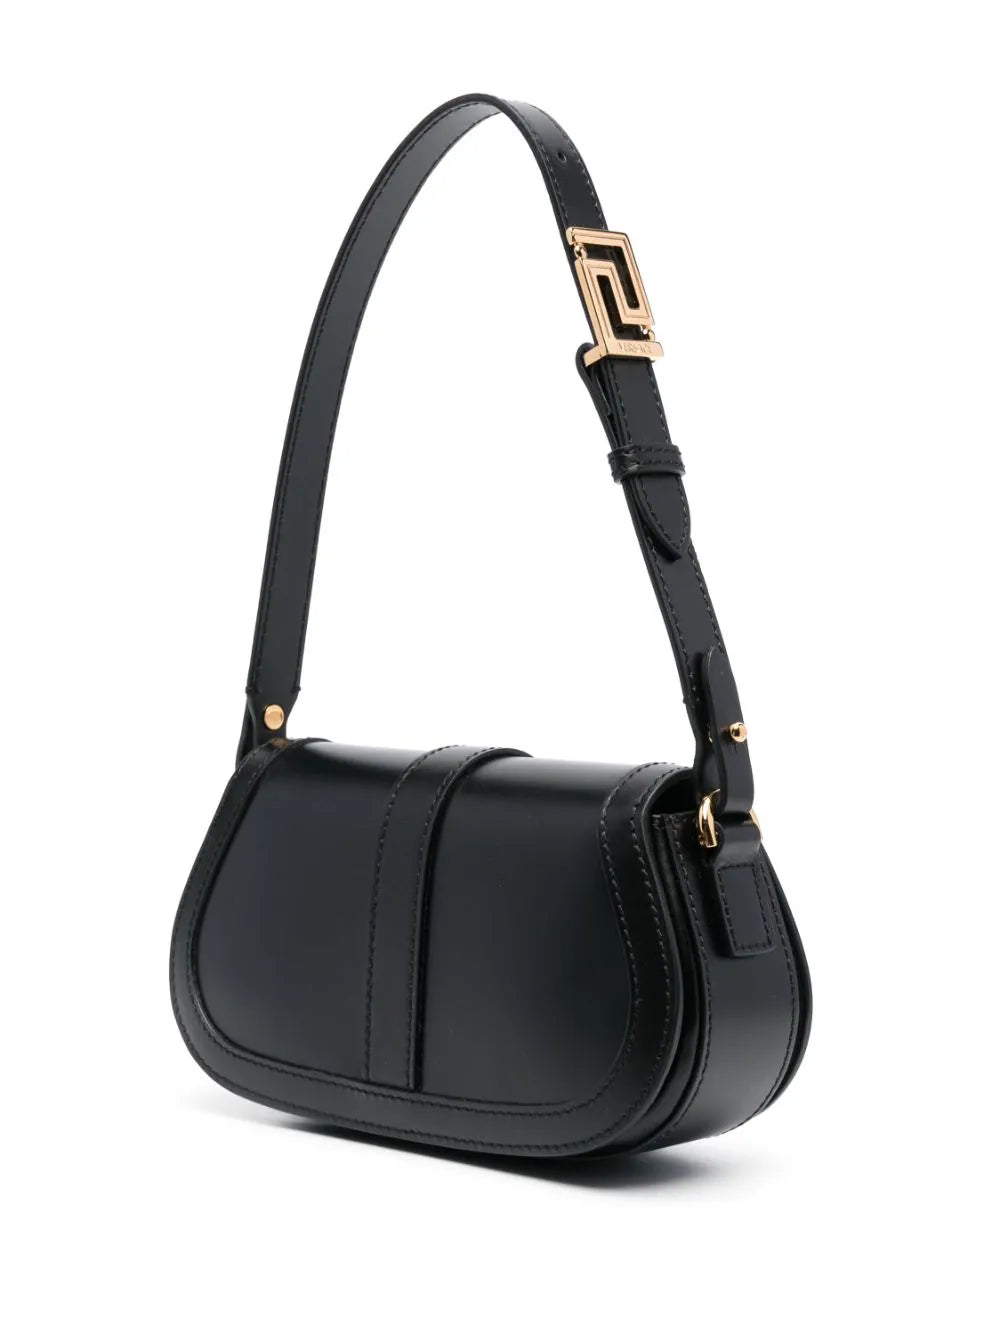 Versace Black with Gold Greca Goddess Mini Shoulder Bag